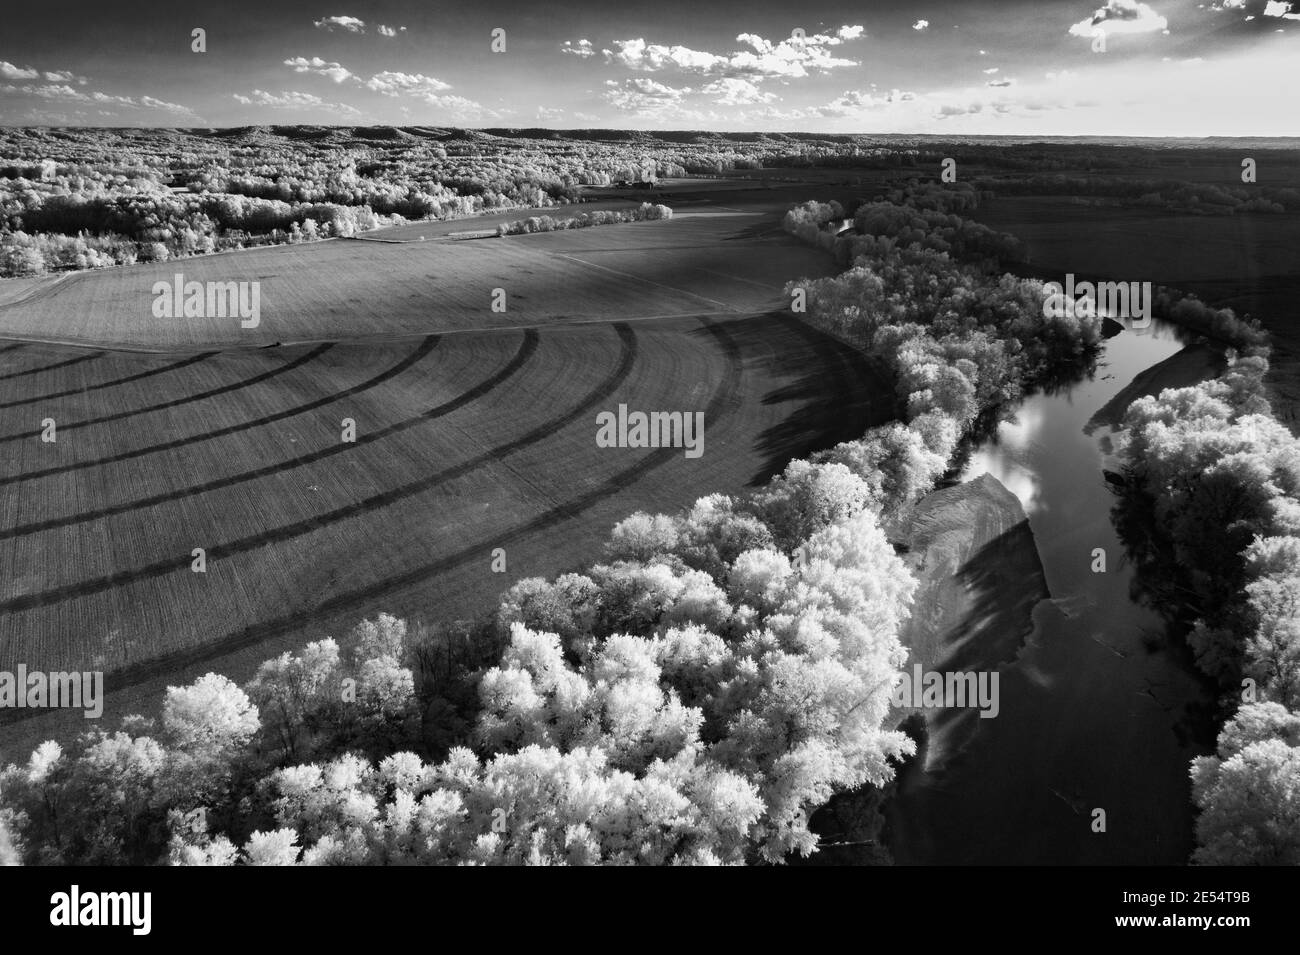 Luftaufnahme des weißen Flusses in der Nähe von Shieldstown, AUFGENOMMEN in 850nm schwarz-weiß Infrarot. Aufgenommen im Herbst 2020. Stockfoto